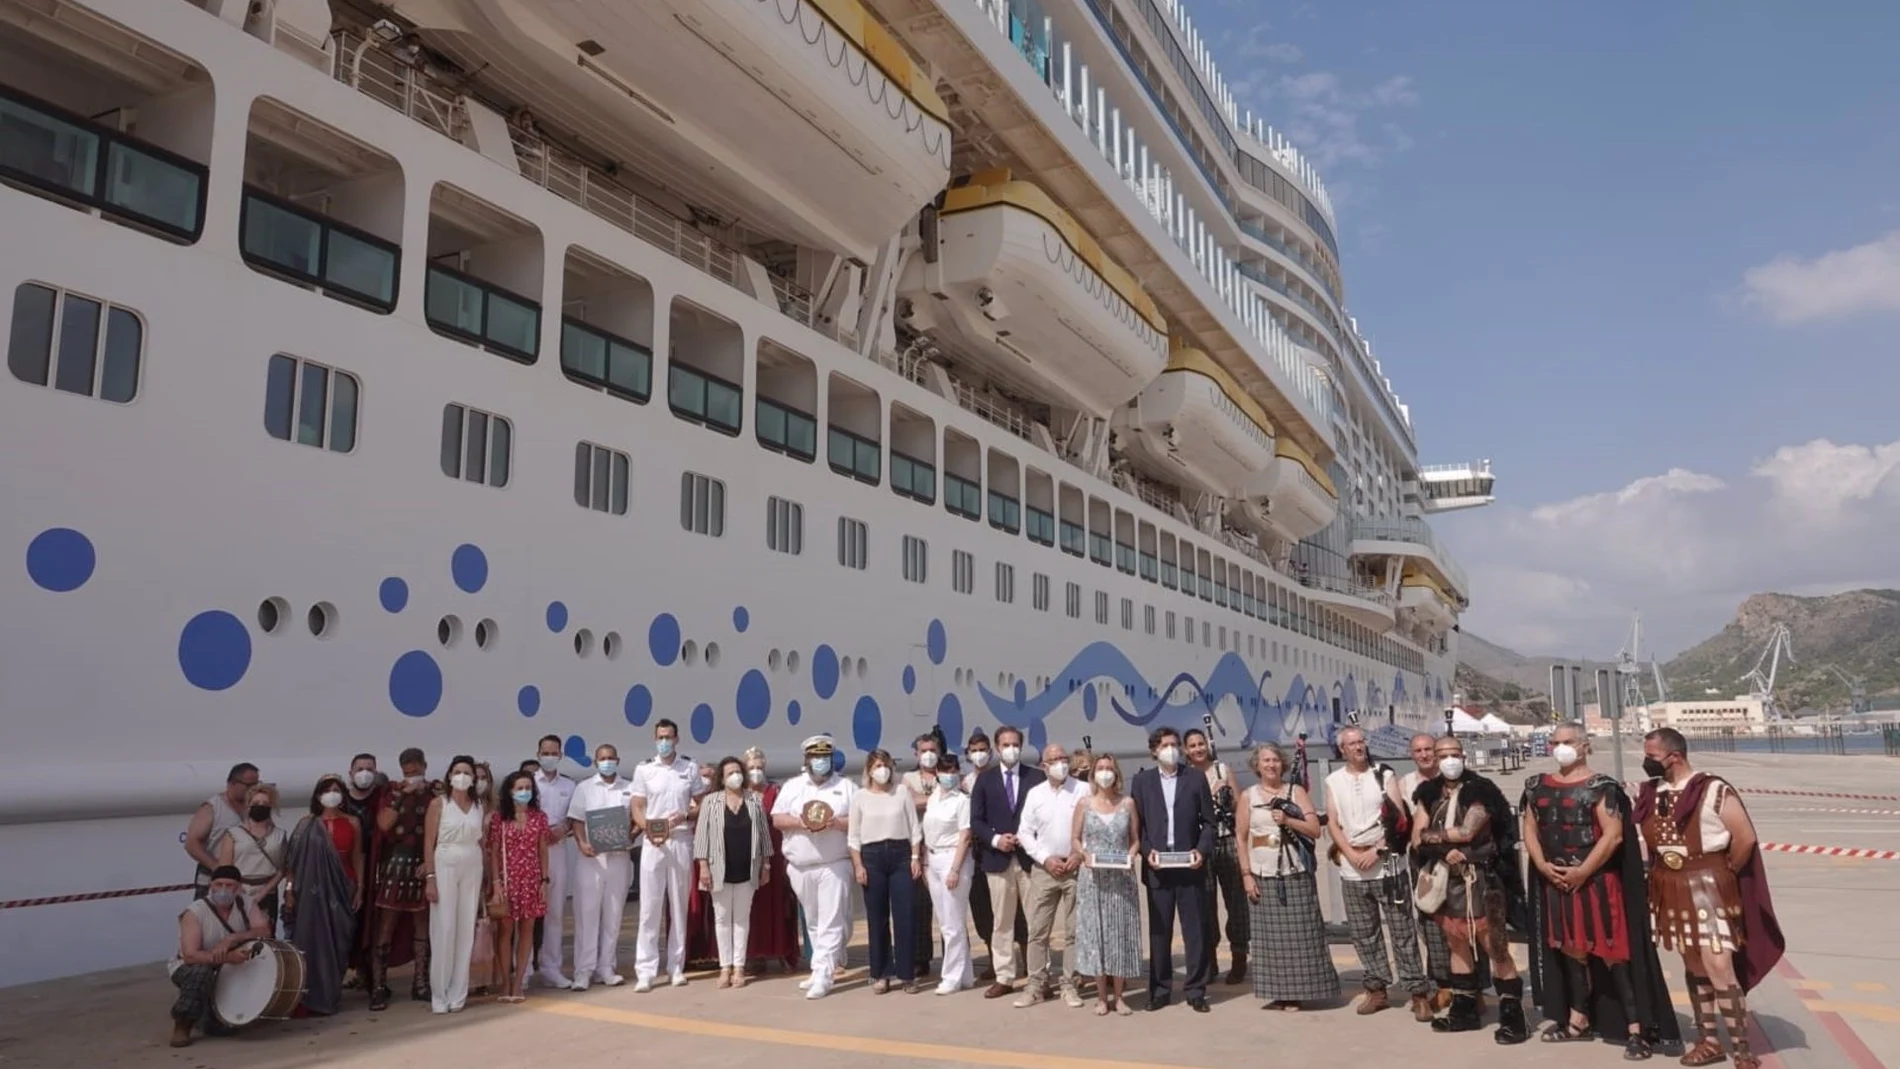 Llega a Cartagena el primer crucero internacional tras 16 meses con cerca de 1.500 turistas.